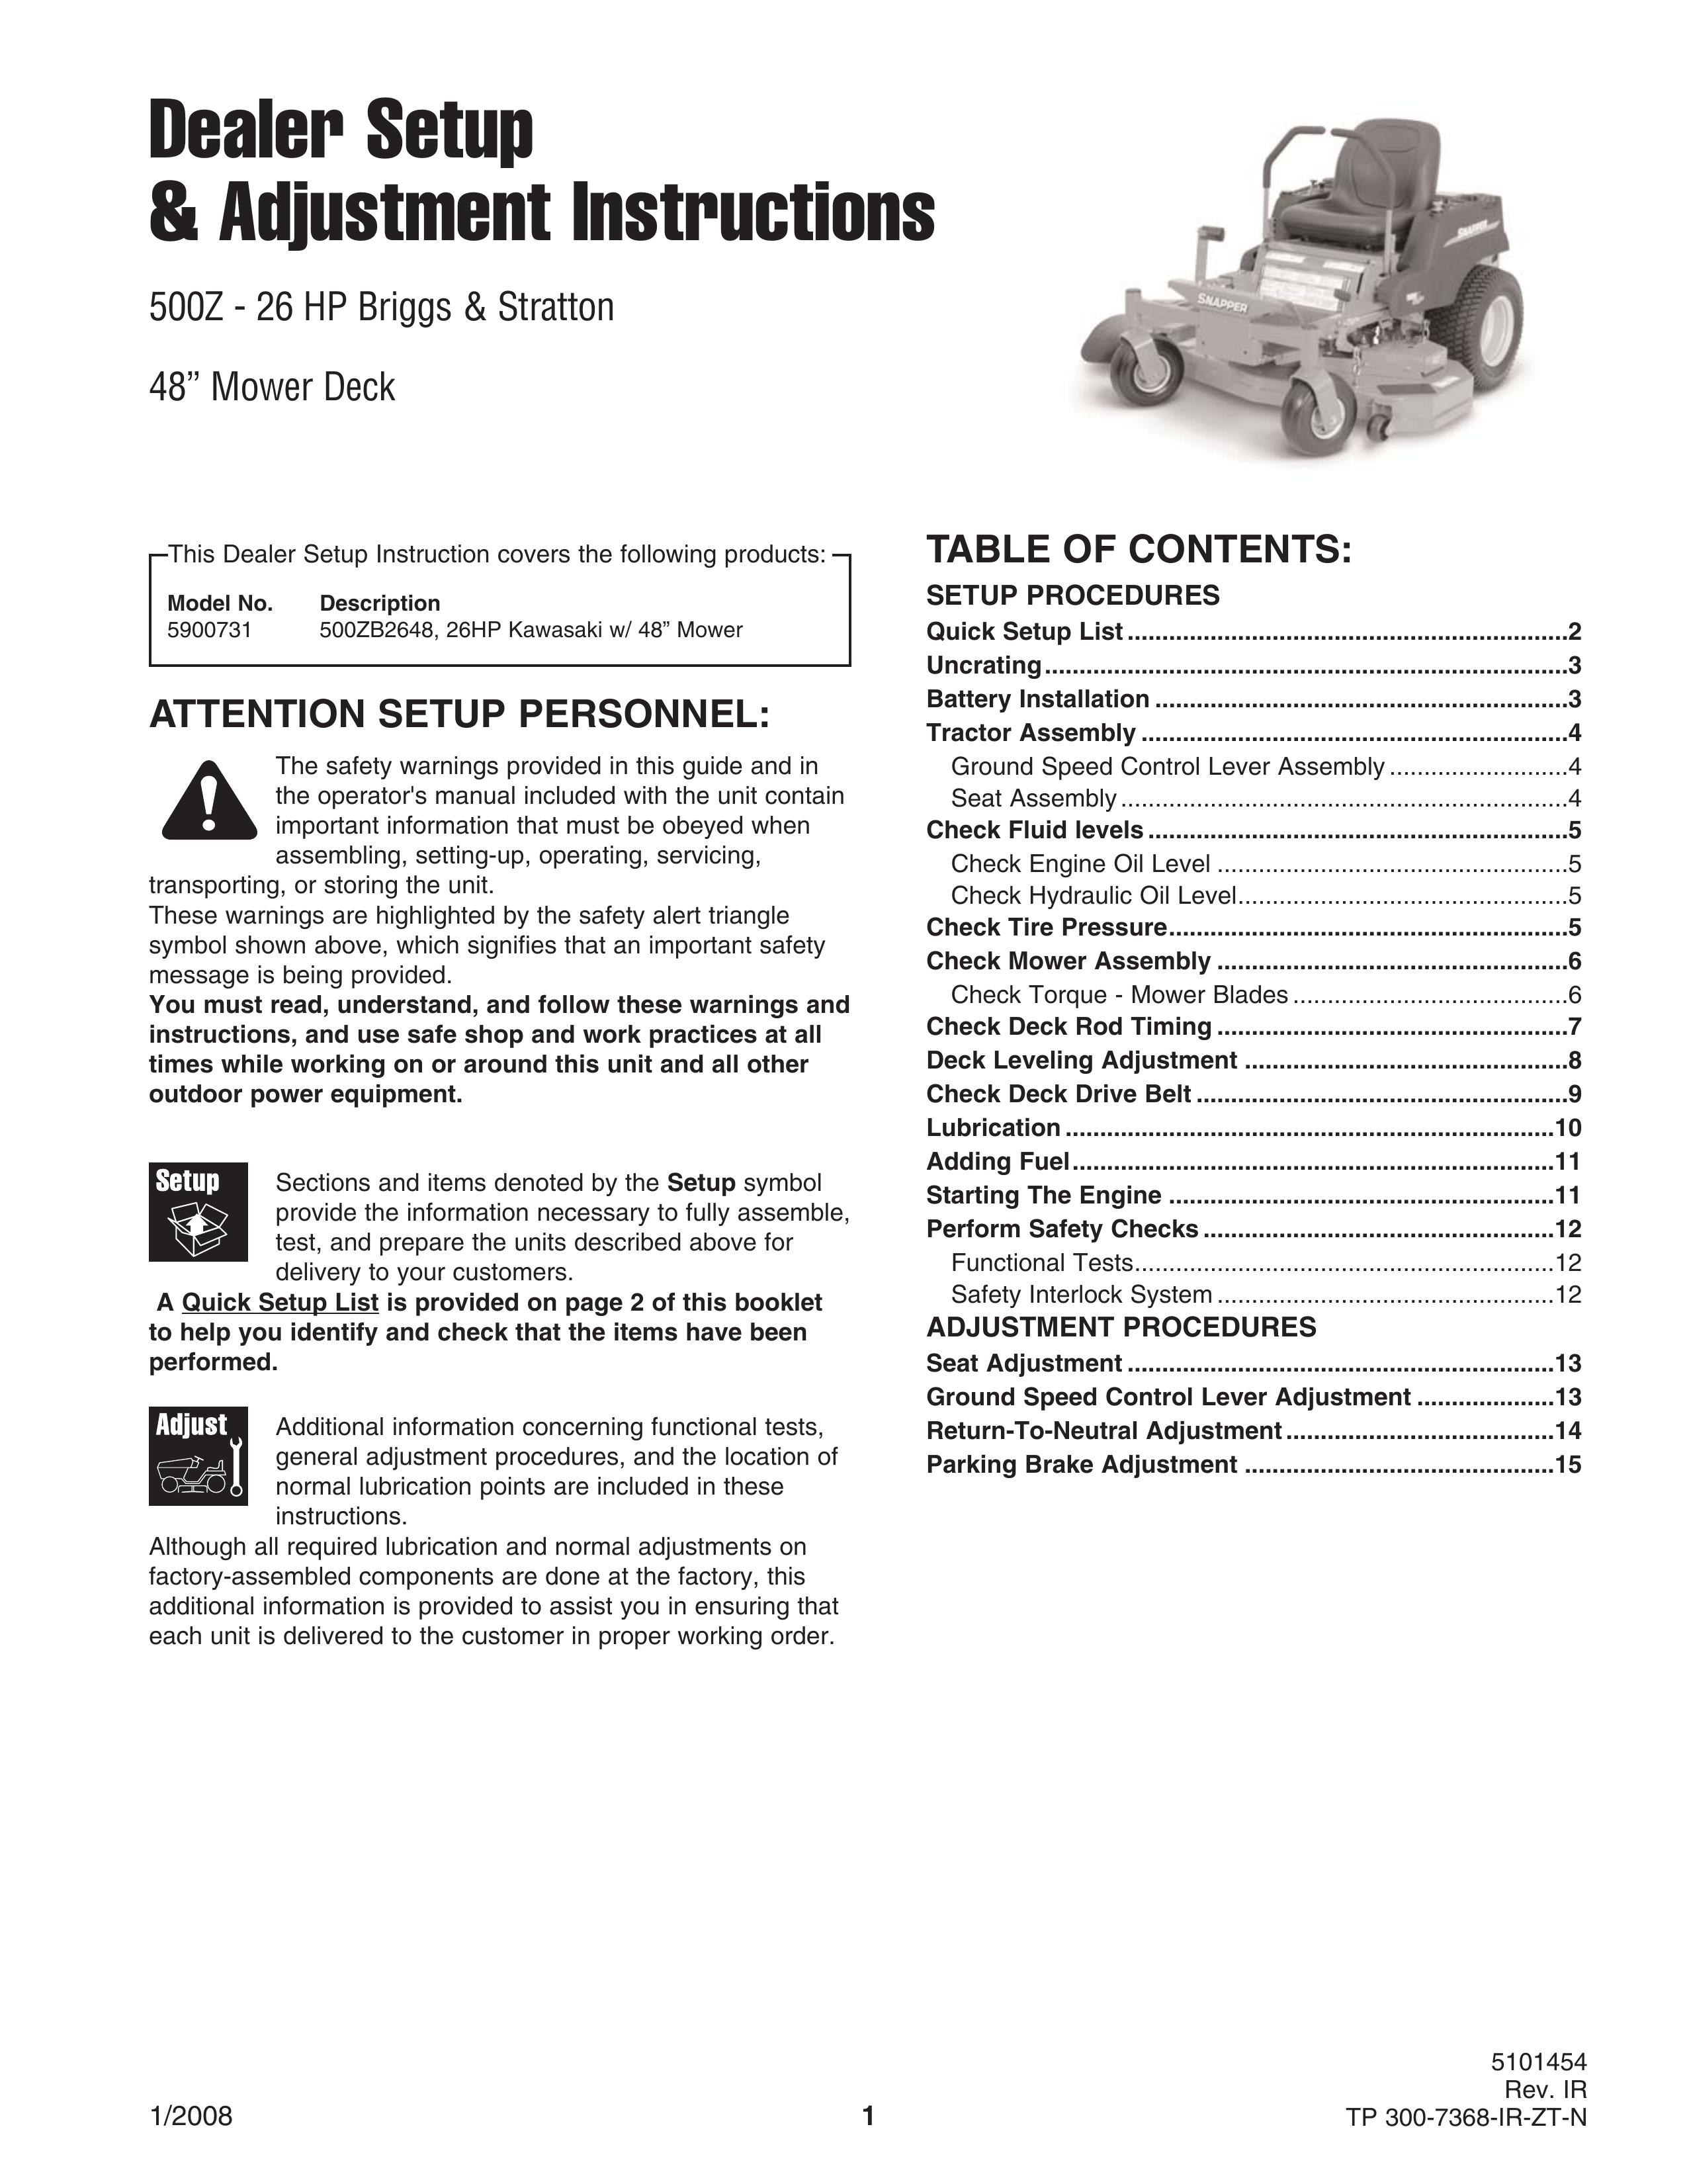 Briggs & Stratton 500Z - 26 Lawn Mower Accessory User Manual